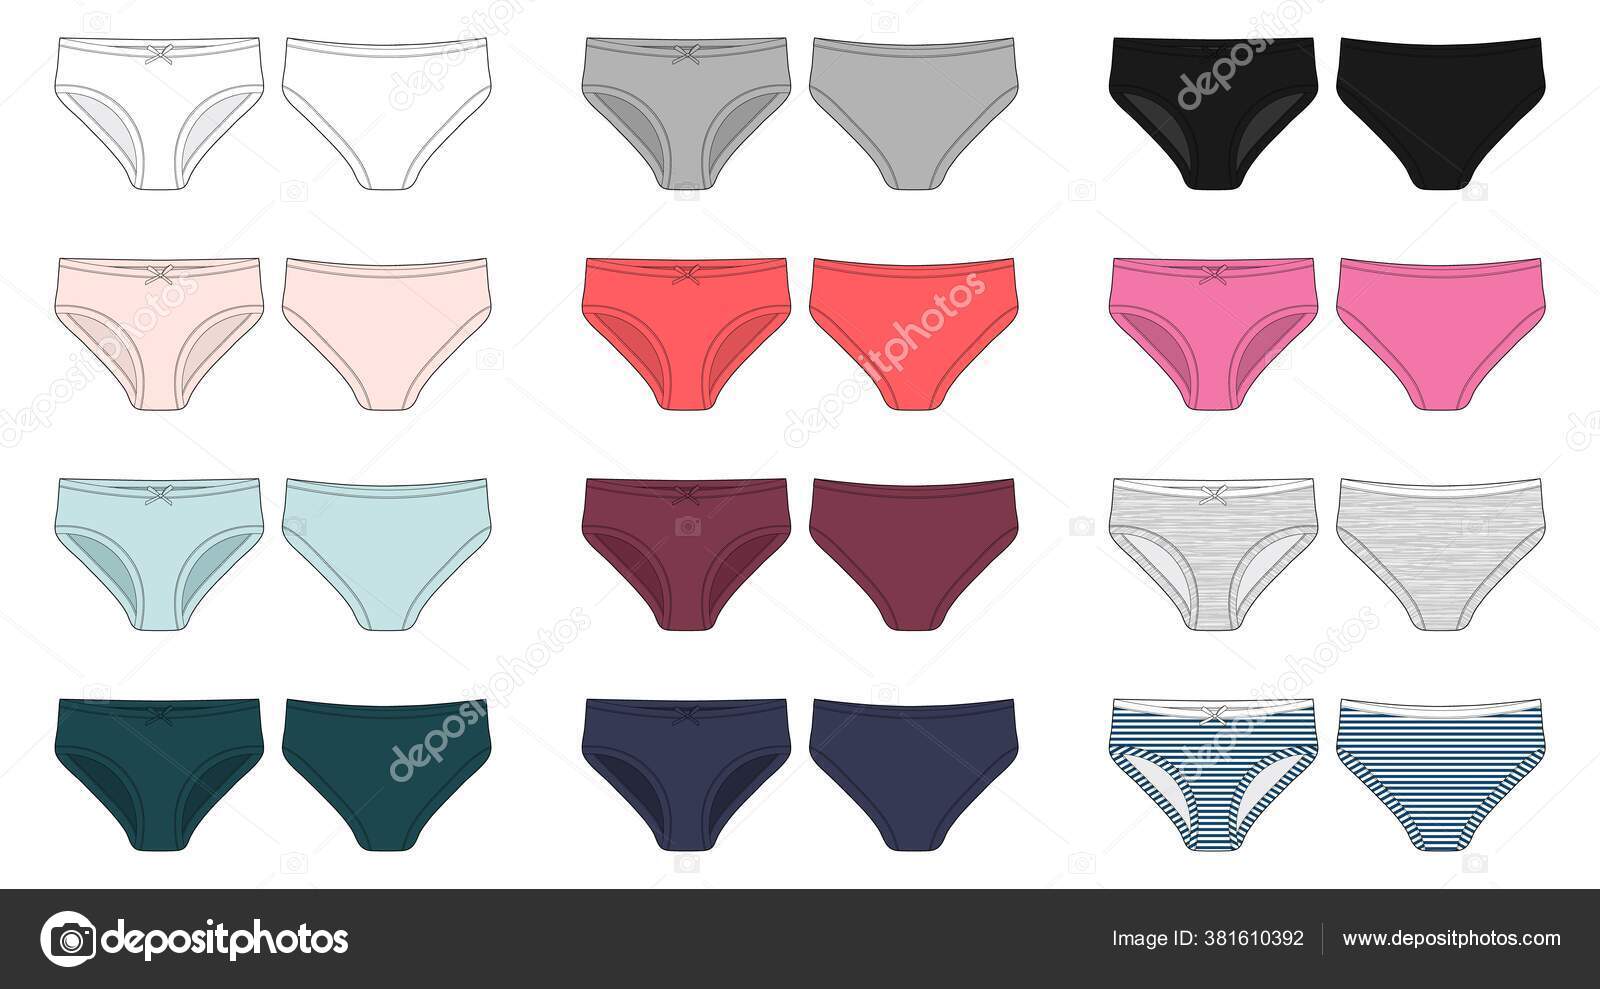 Hand Drawn Types Of Women's Panties. Vector Set Of Underwear